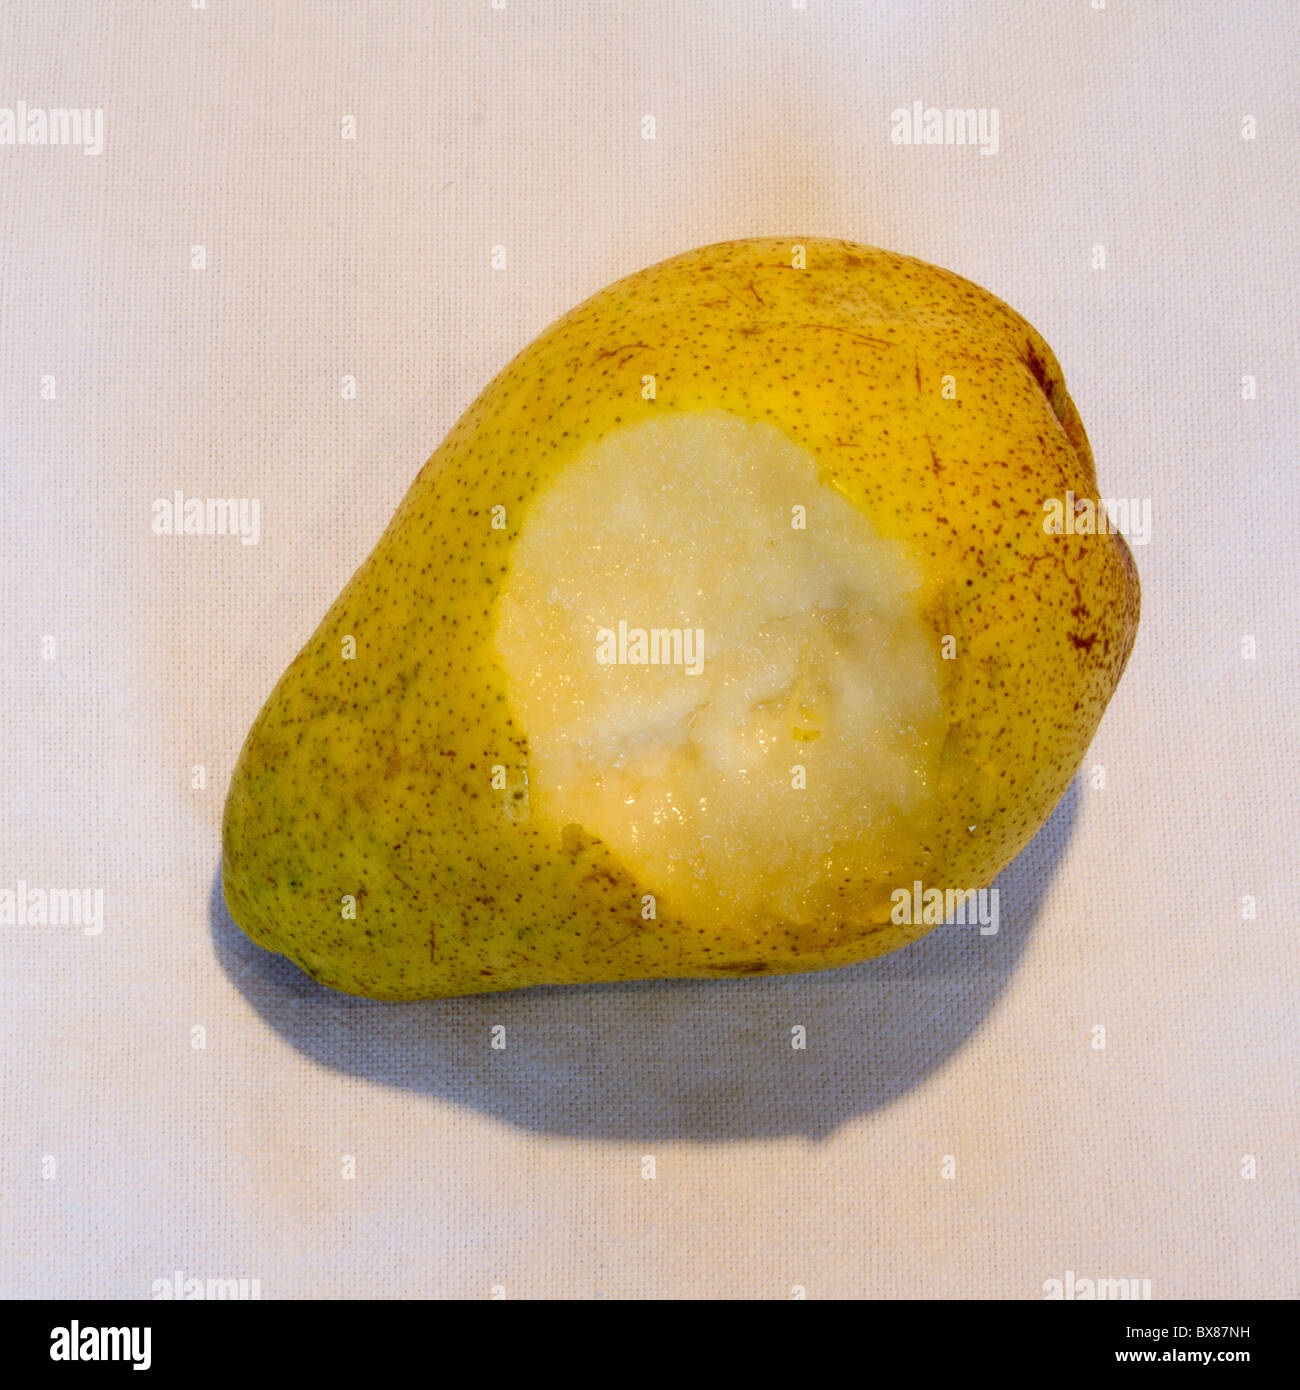 half-eaten pear food Stock Photo